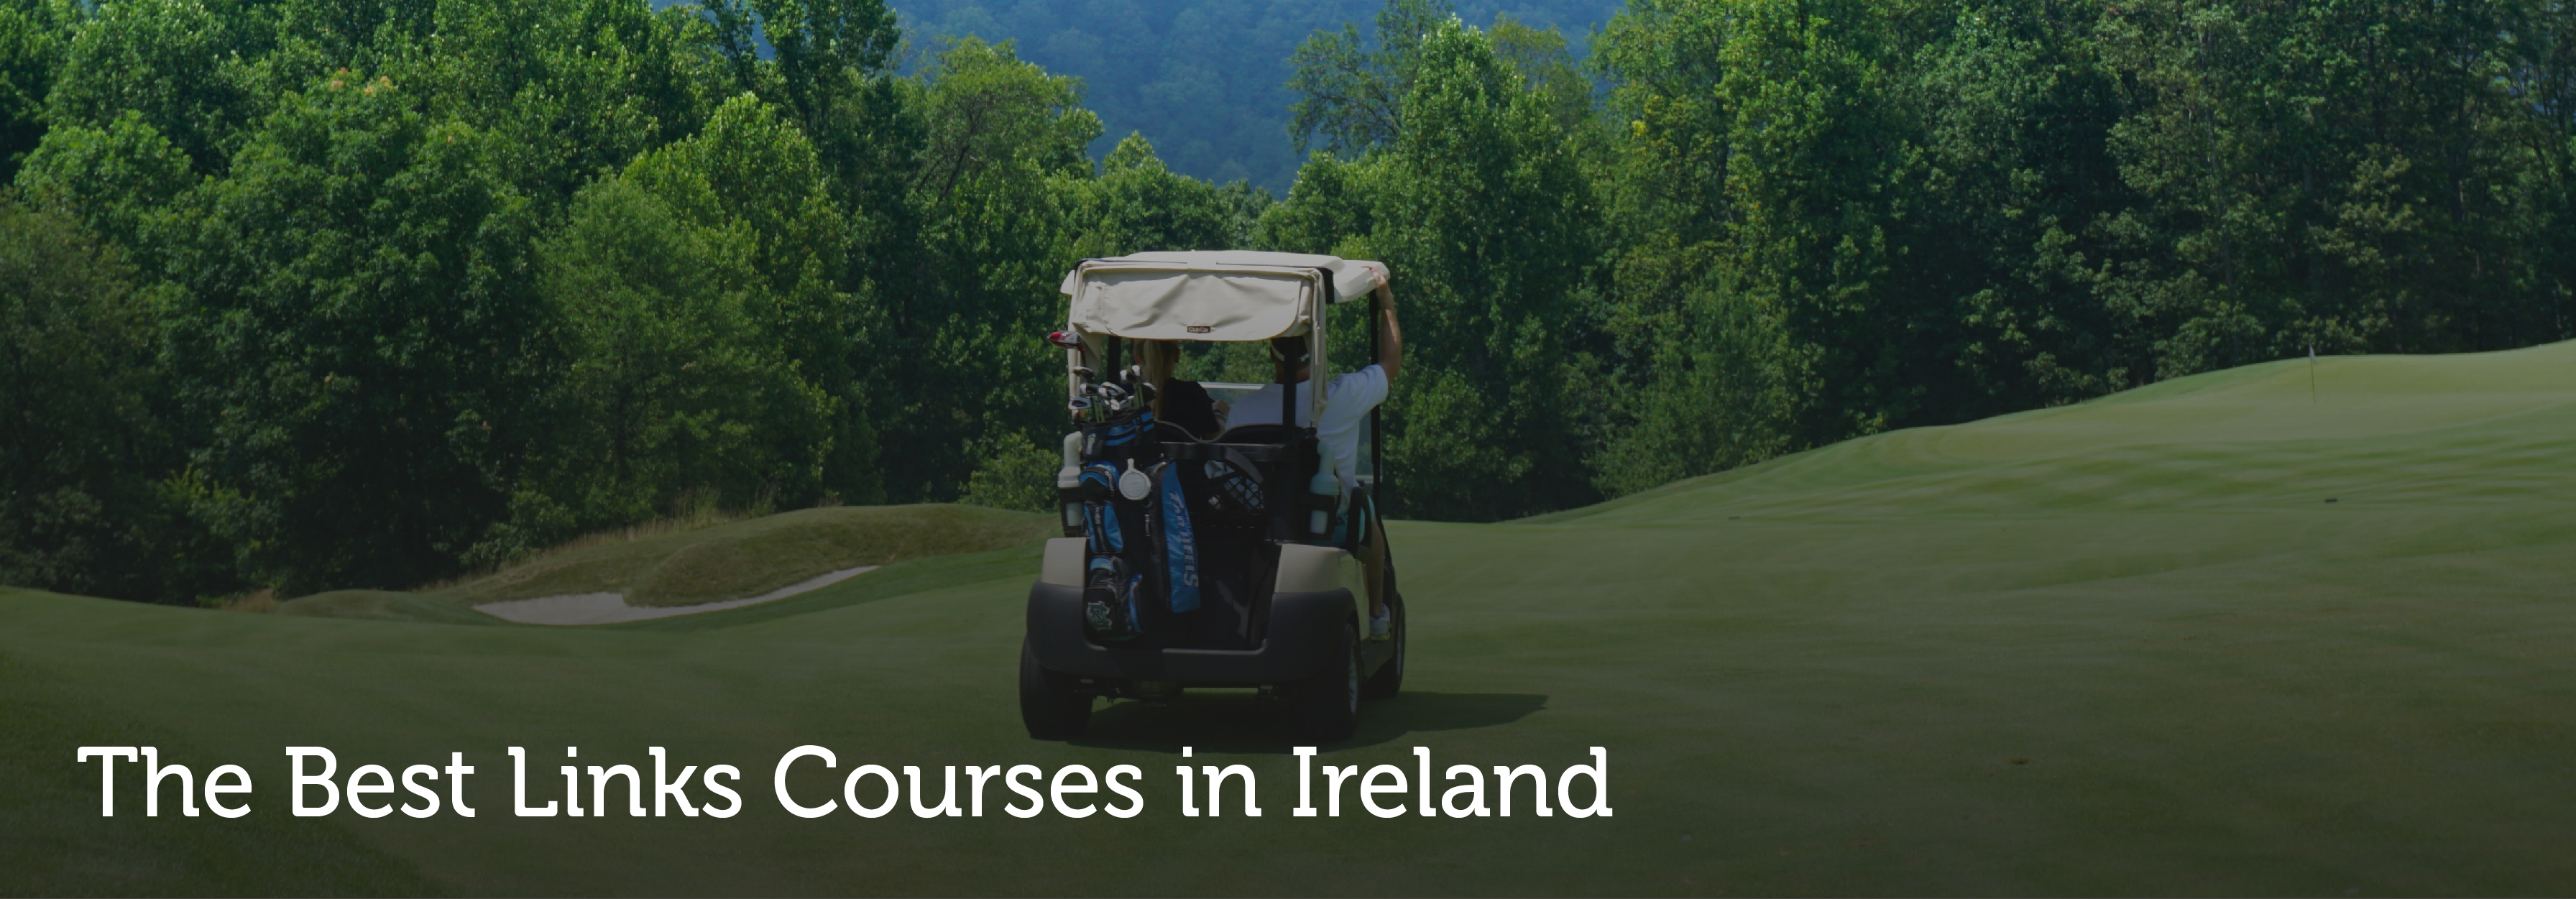 Best Links Courses in Ireland